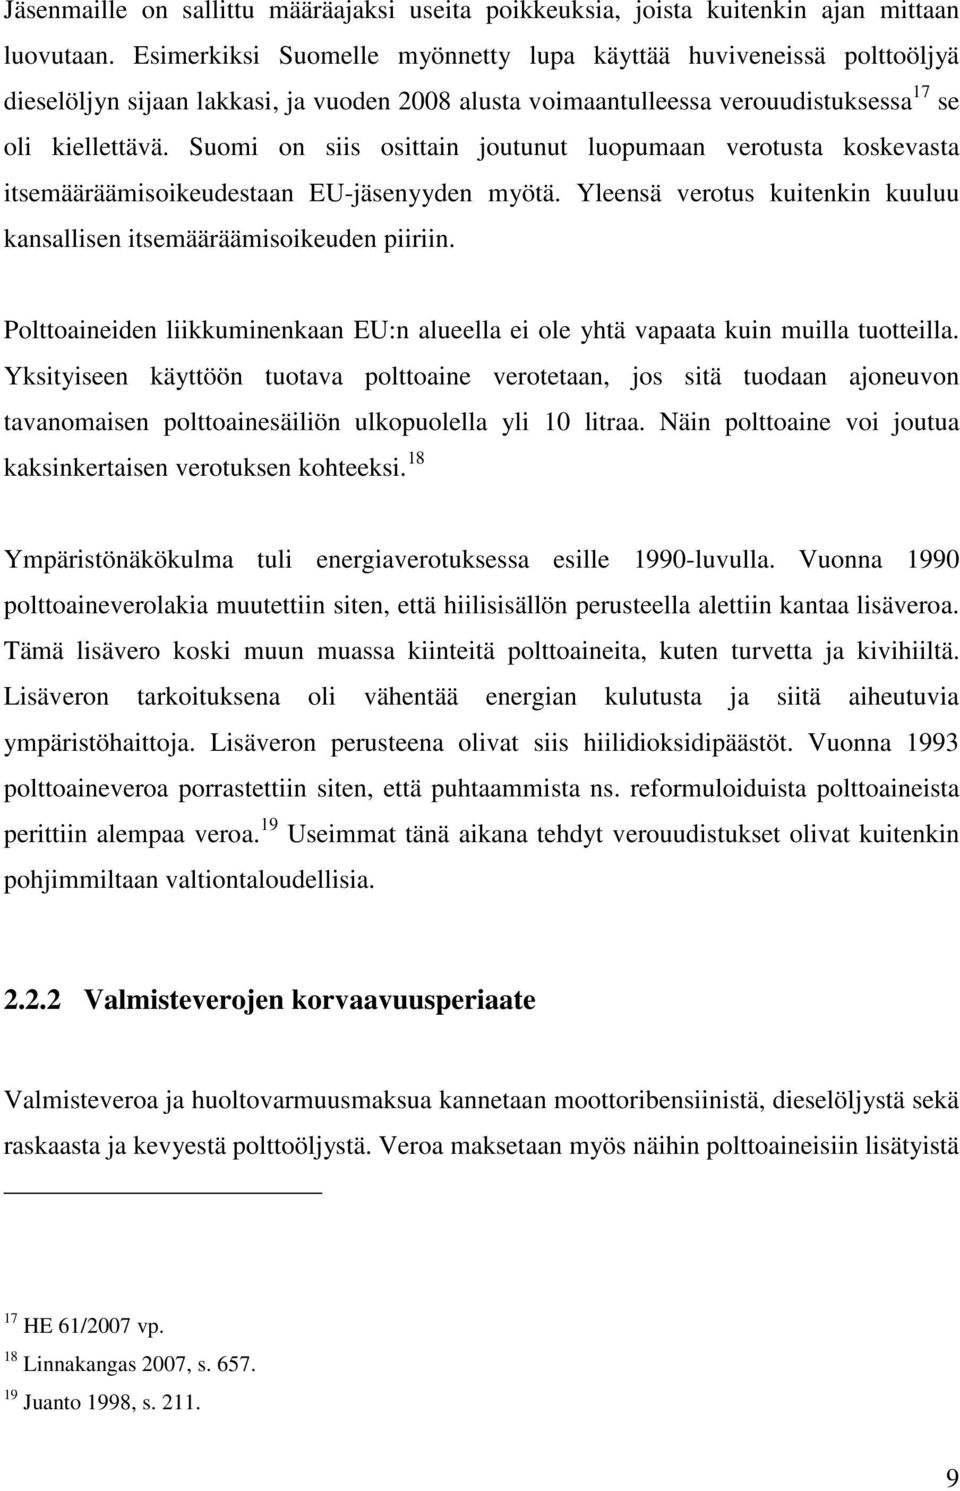 Suomi on siis osittain joutunut luopumaan verotusta koskevasta itsemääräämisoikeudestaan EU-jäsenyyden myötä. Yleensä verotus kuitenkin kuuluu kansallisen itsemääräämisoikeuden piiriin.